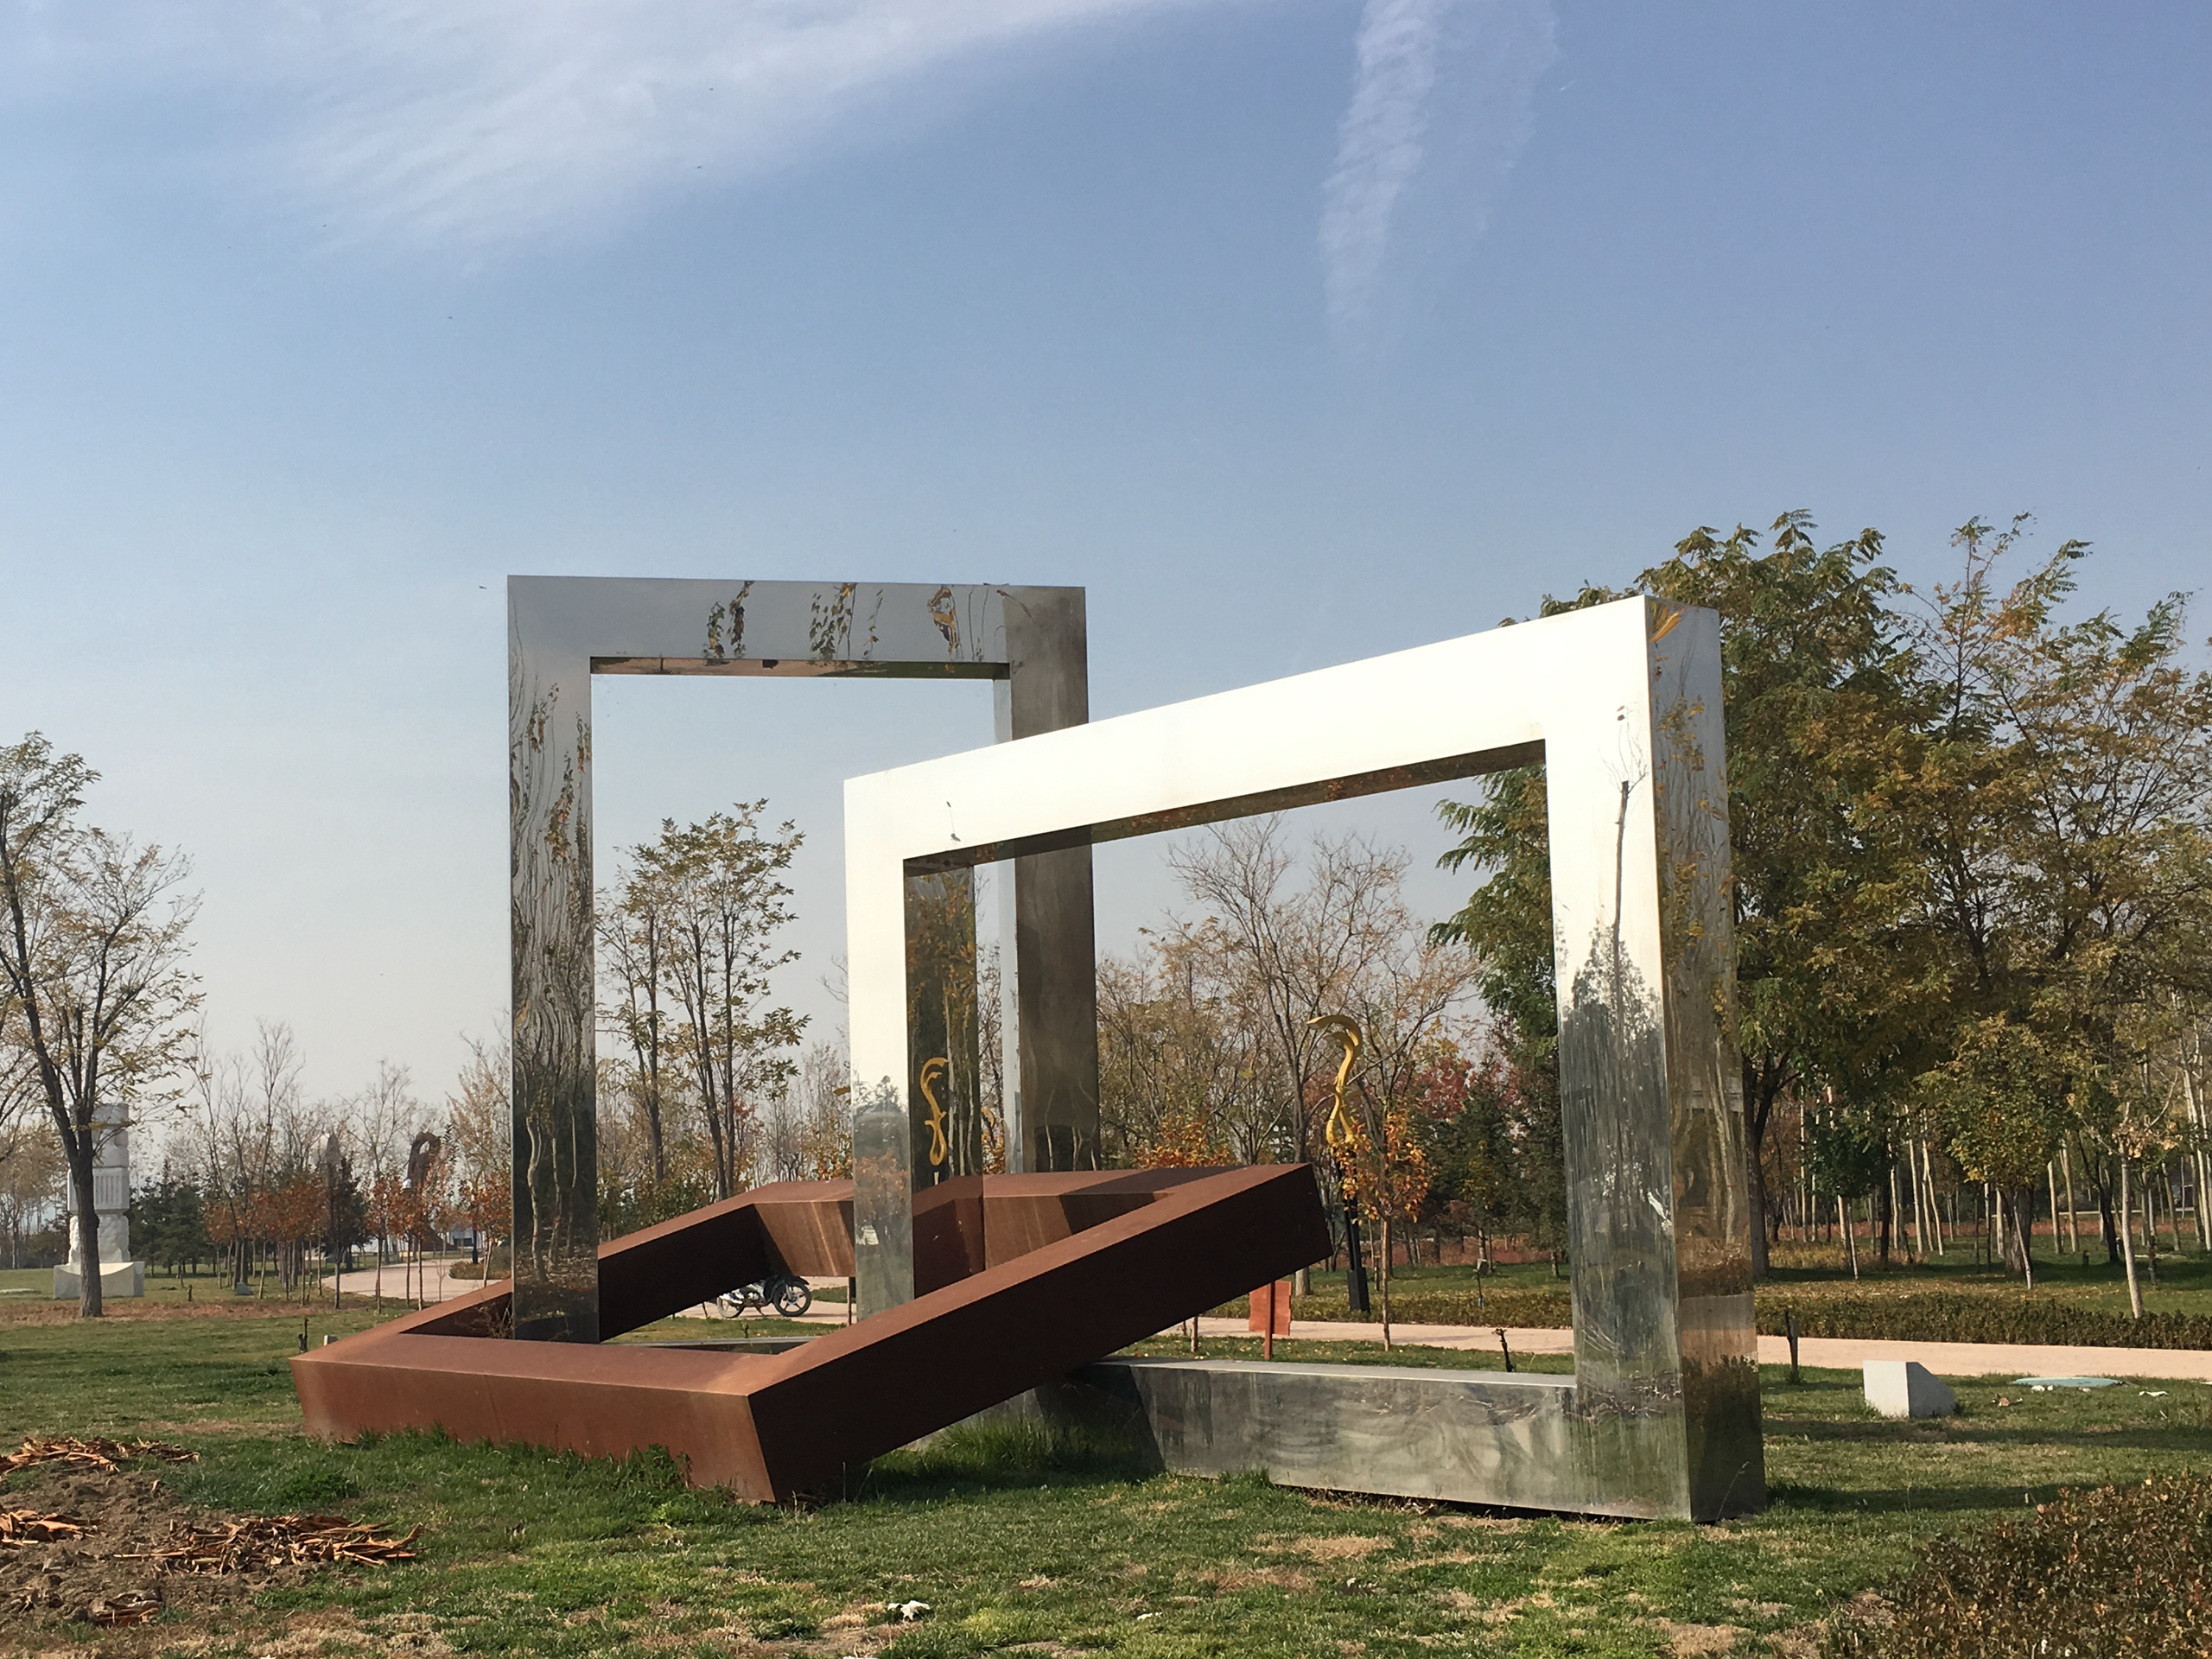 Mirror Stainless Steel and Corten Steel Sculpture in China-Arab Friendship Sculpture Garden